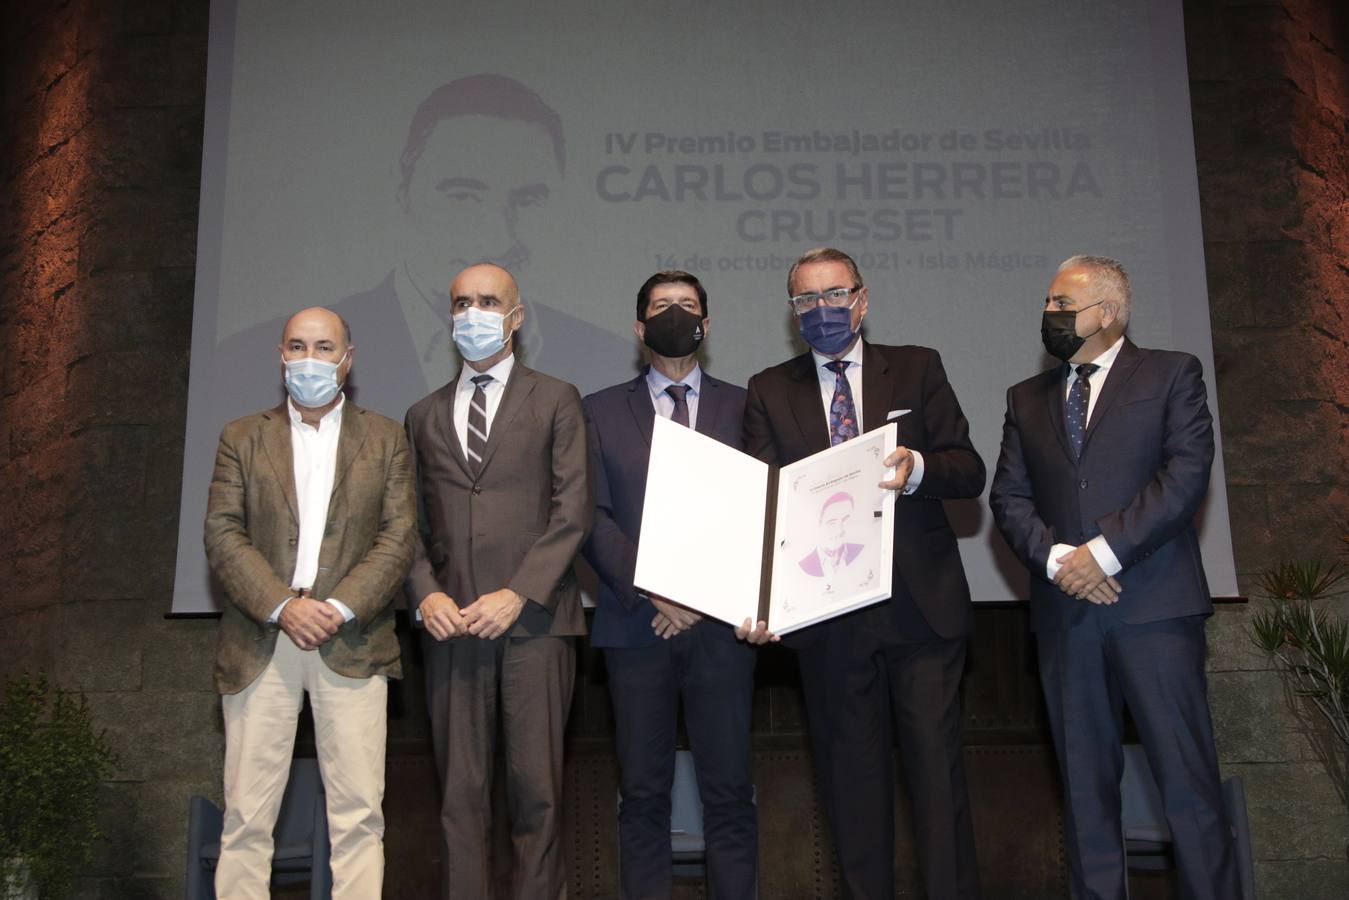 Carlos Herrera recibe el Premio Embajador de Sevilla 2021